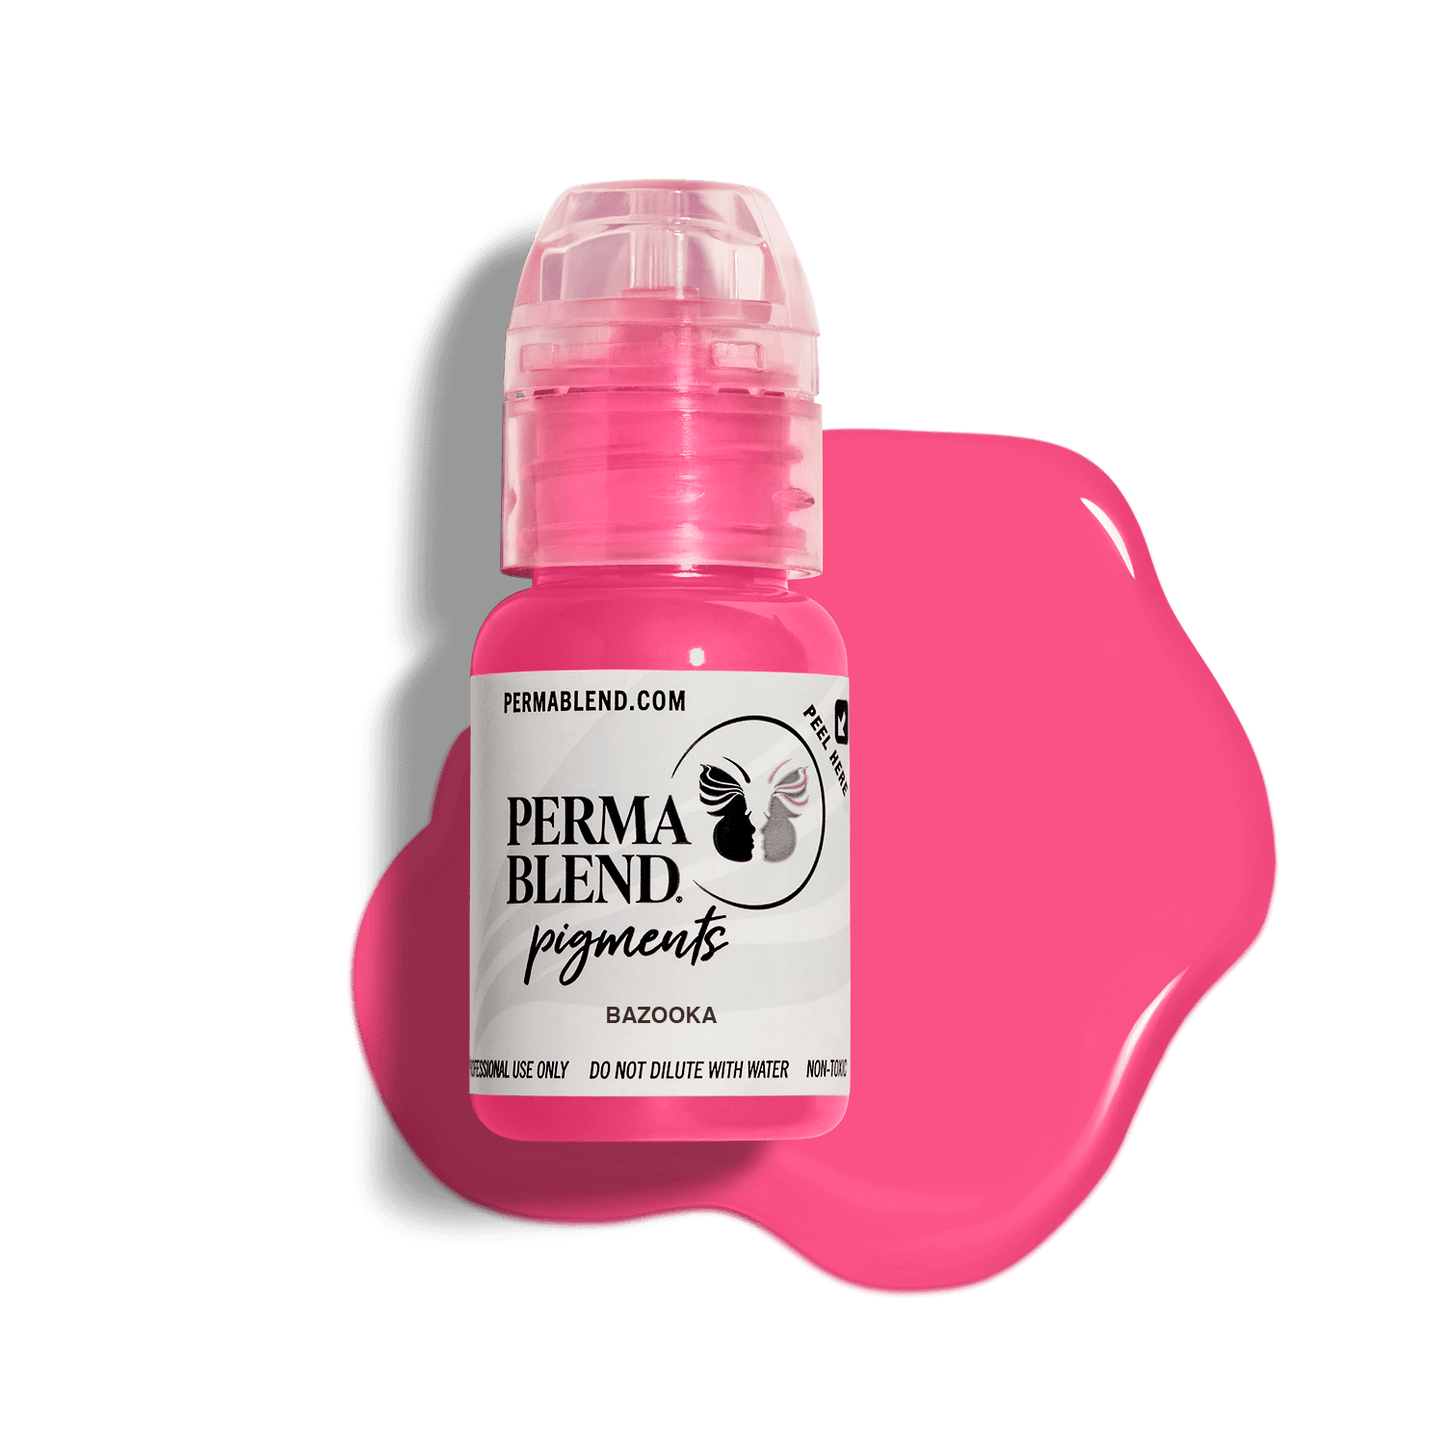 Perma Blend Pigments - Bazooka de labios sensual